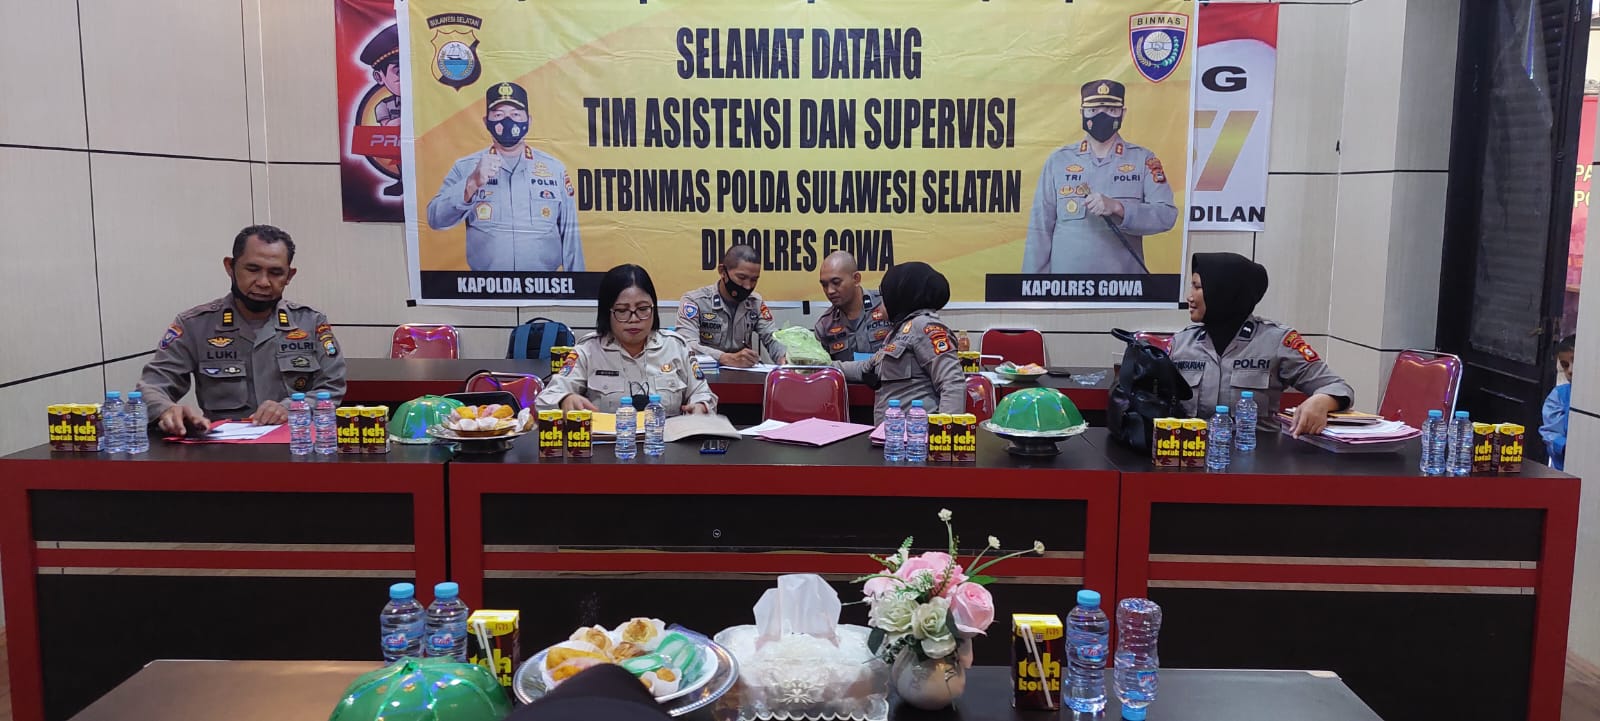 Sat Binmas Polres Gowa Menerima Kunjungan Tim Supervisi Ditbinmas Polda Sulsel